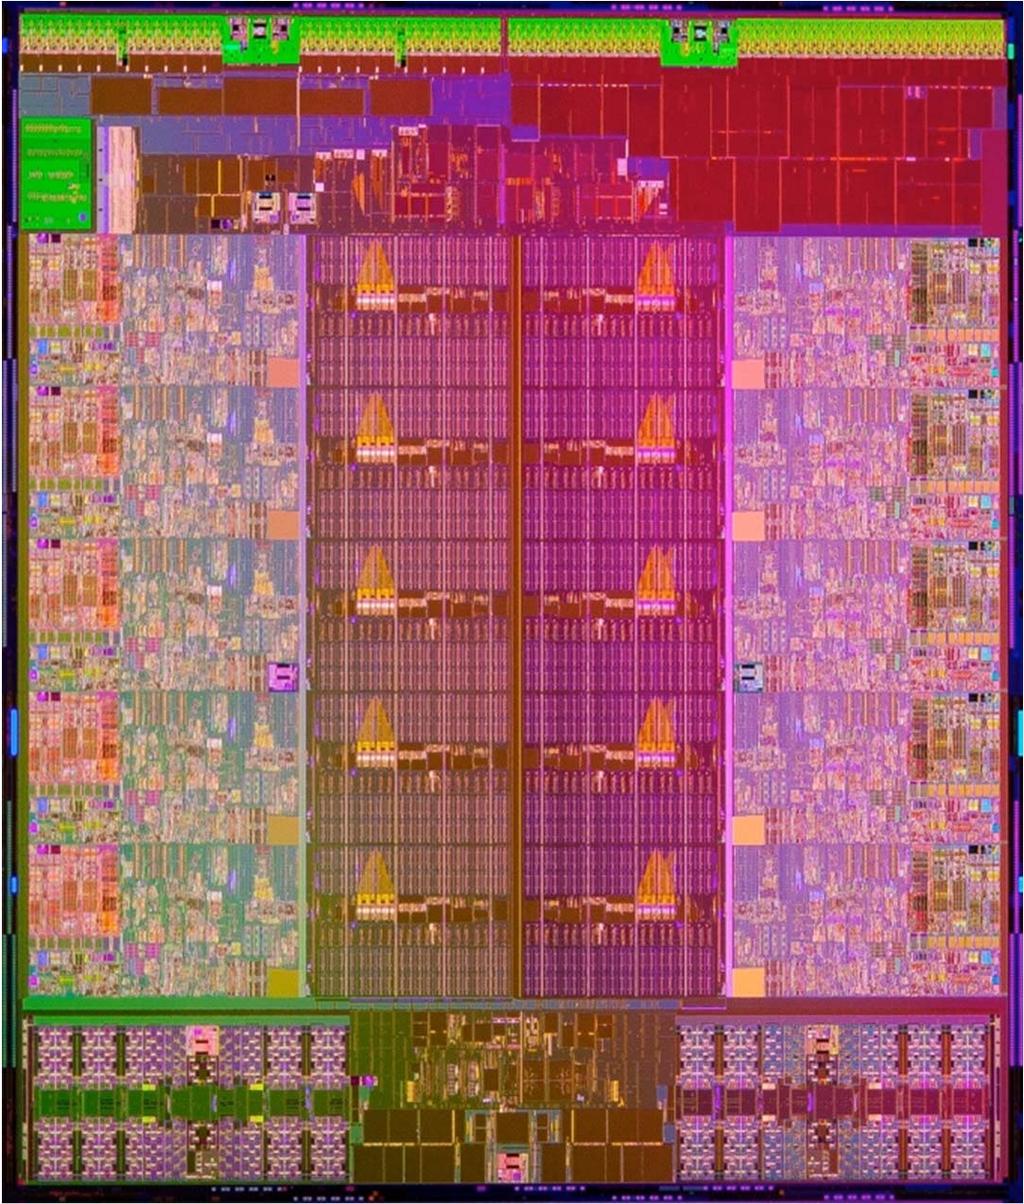 Intel E5-2697v2 vs. Haswell 12 cores @ 2.